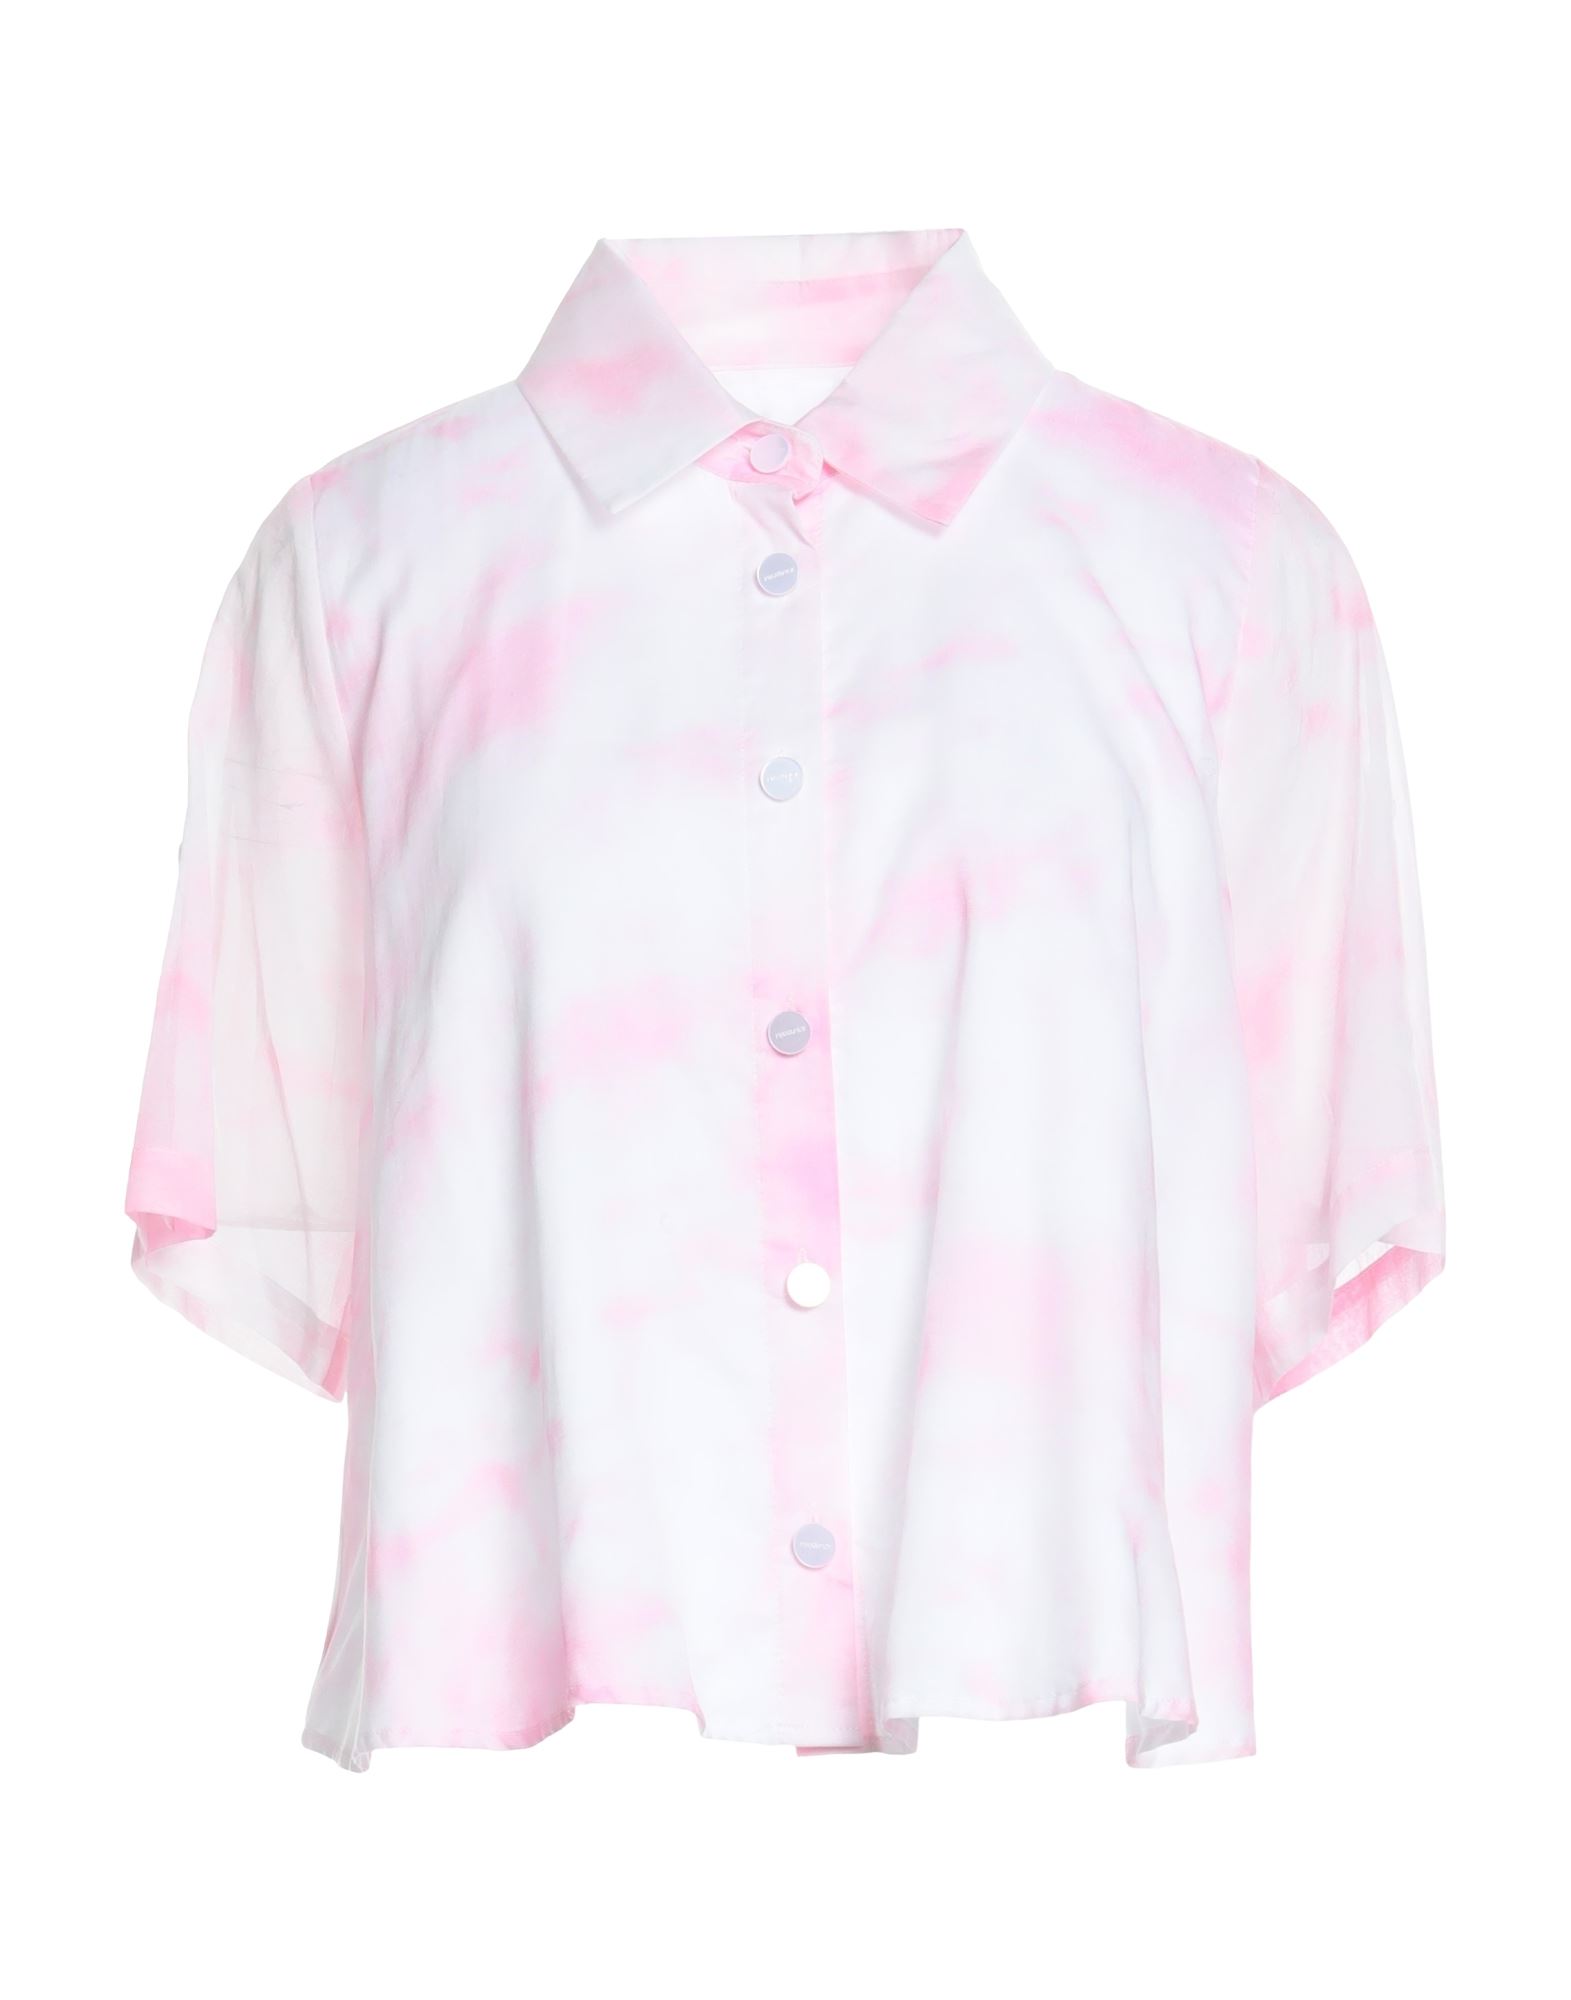 Max & Moi Woman Shirt Pink Size 4 Cotton